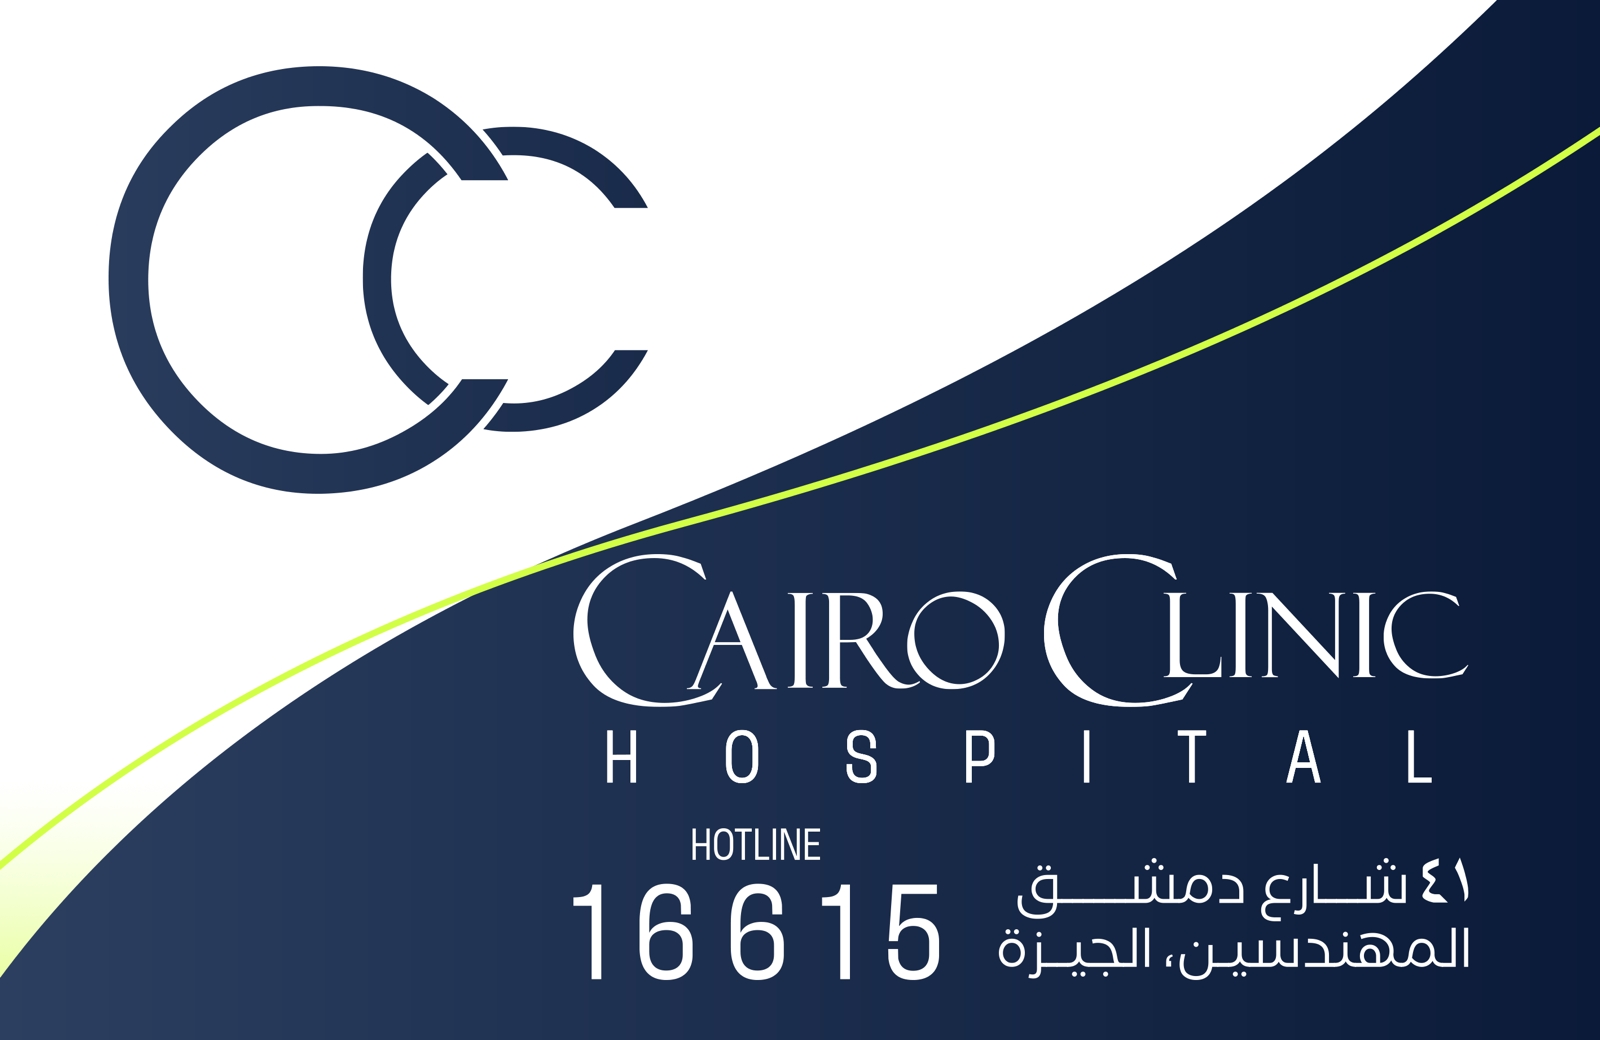 Hospital Cairo Clinic